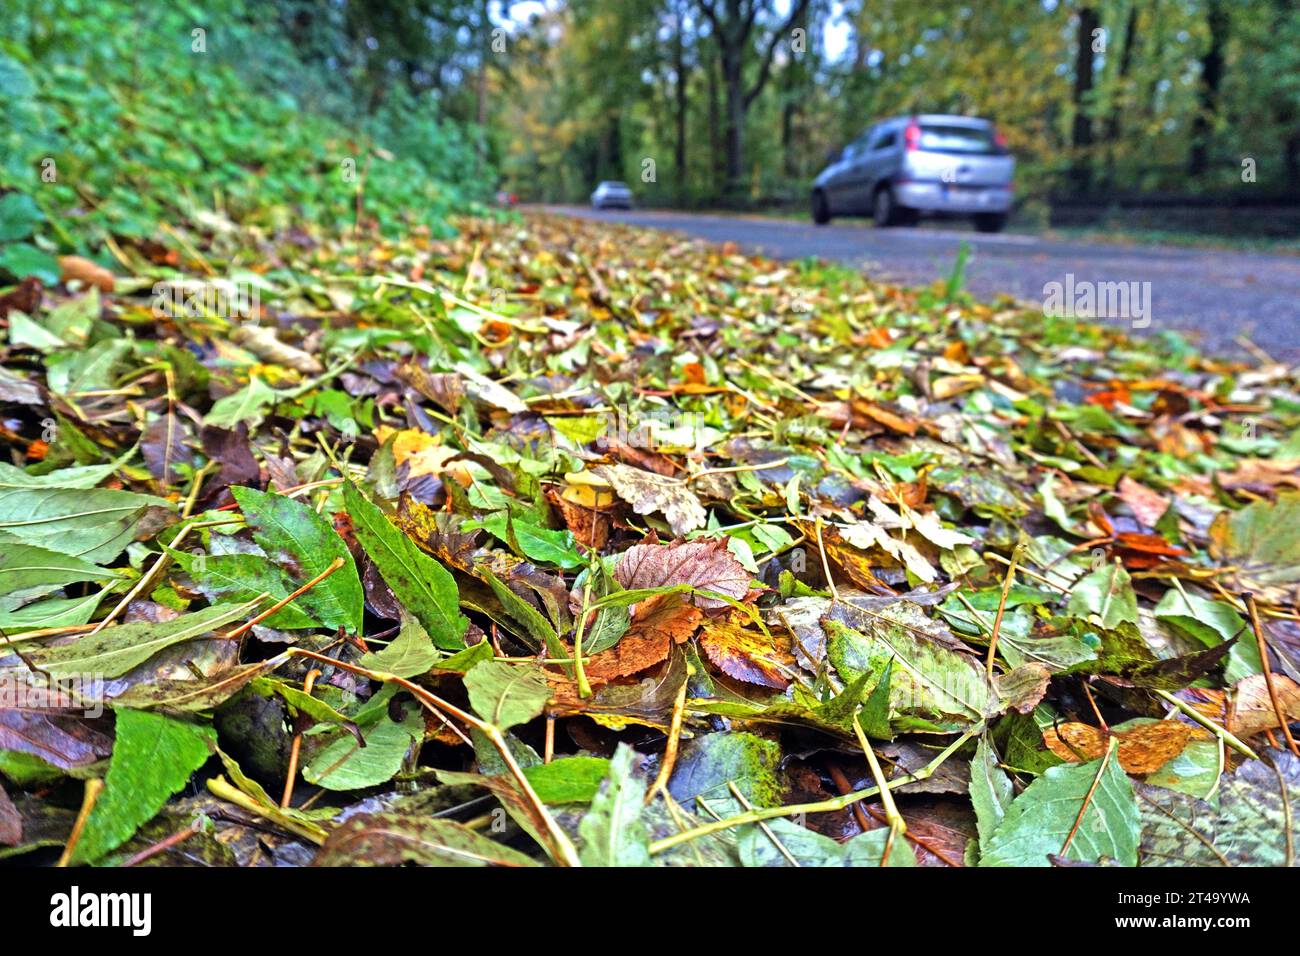 Laubfall im Herbst Herabgefallenes Herbstlaub sammelt sich auf Wegen *** foglie cadenti in autunno foglie cadenti raccogliere su sentieri credito: Imago/Alamy Live News Foto Stock